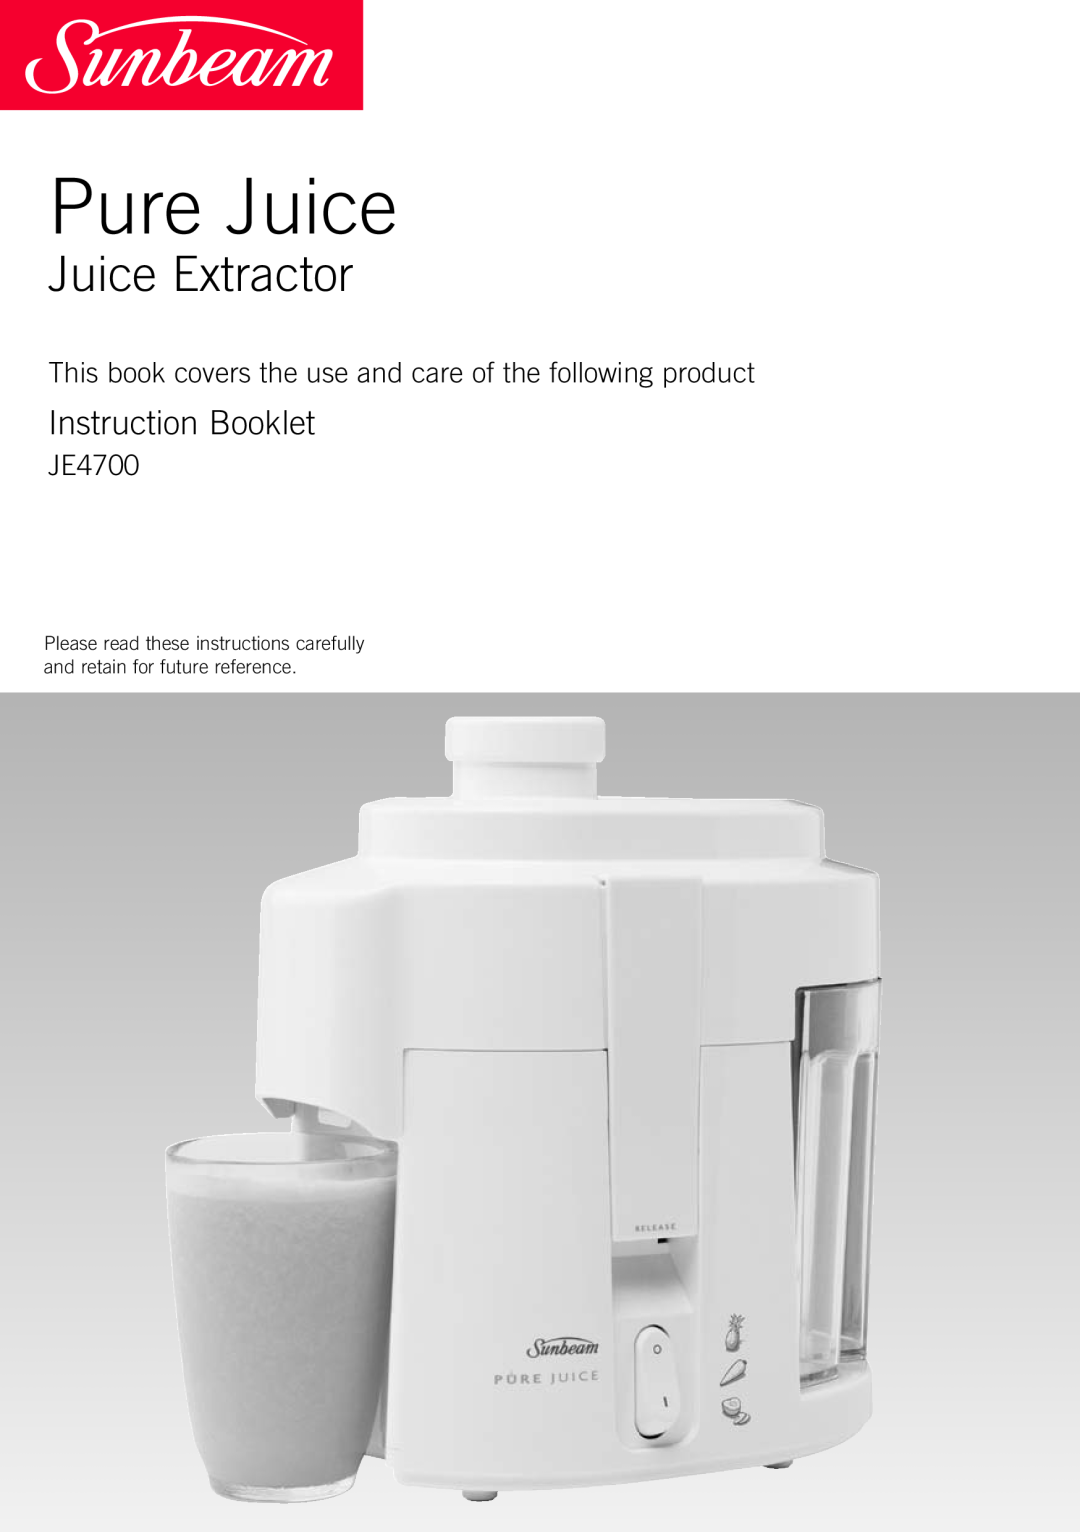 Sunbeam JE4700 manual Pure Juice, Juice Extractor, Instruction And Recipe Booklet 